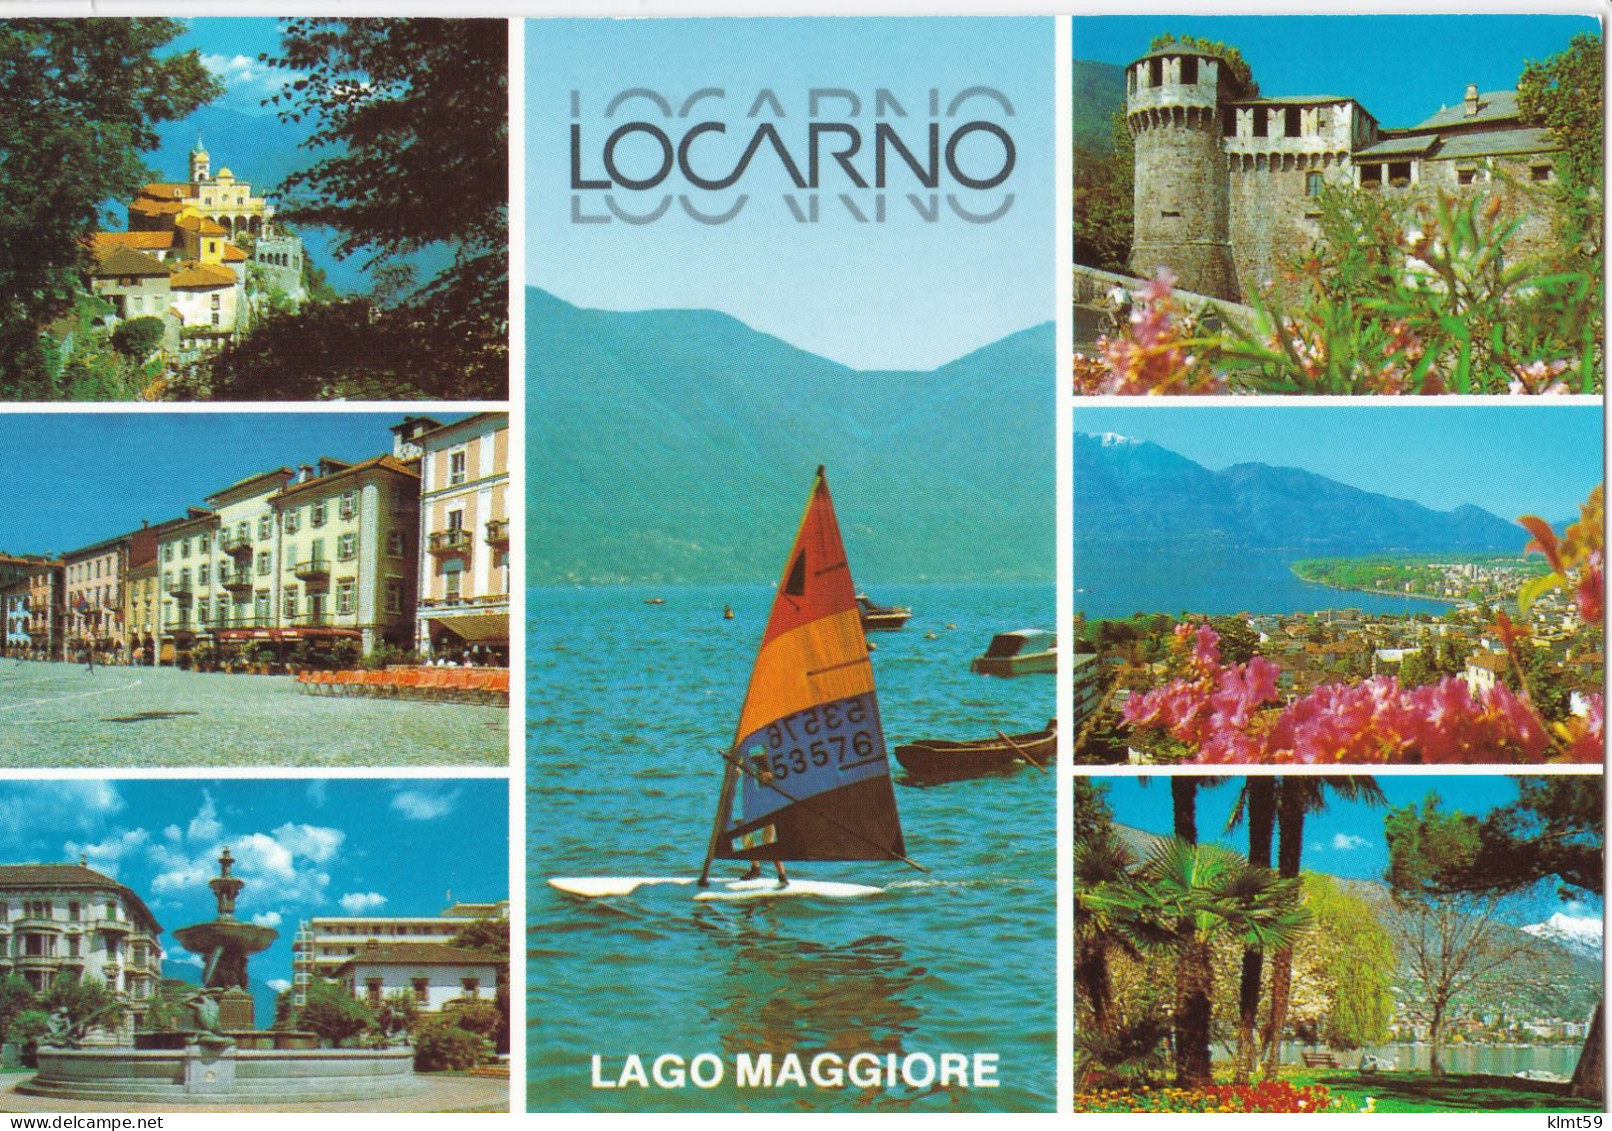 Locarno - Lago Maggiore - Locarno